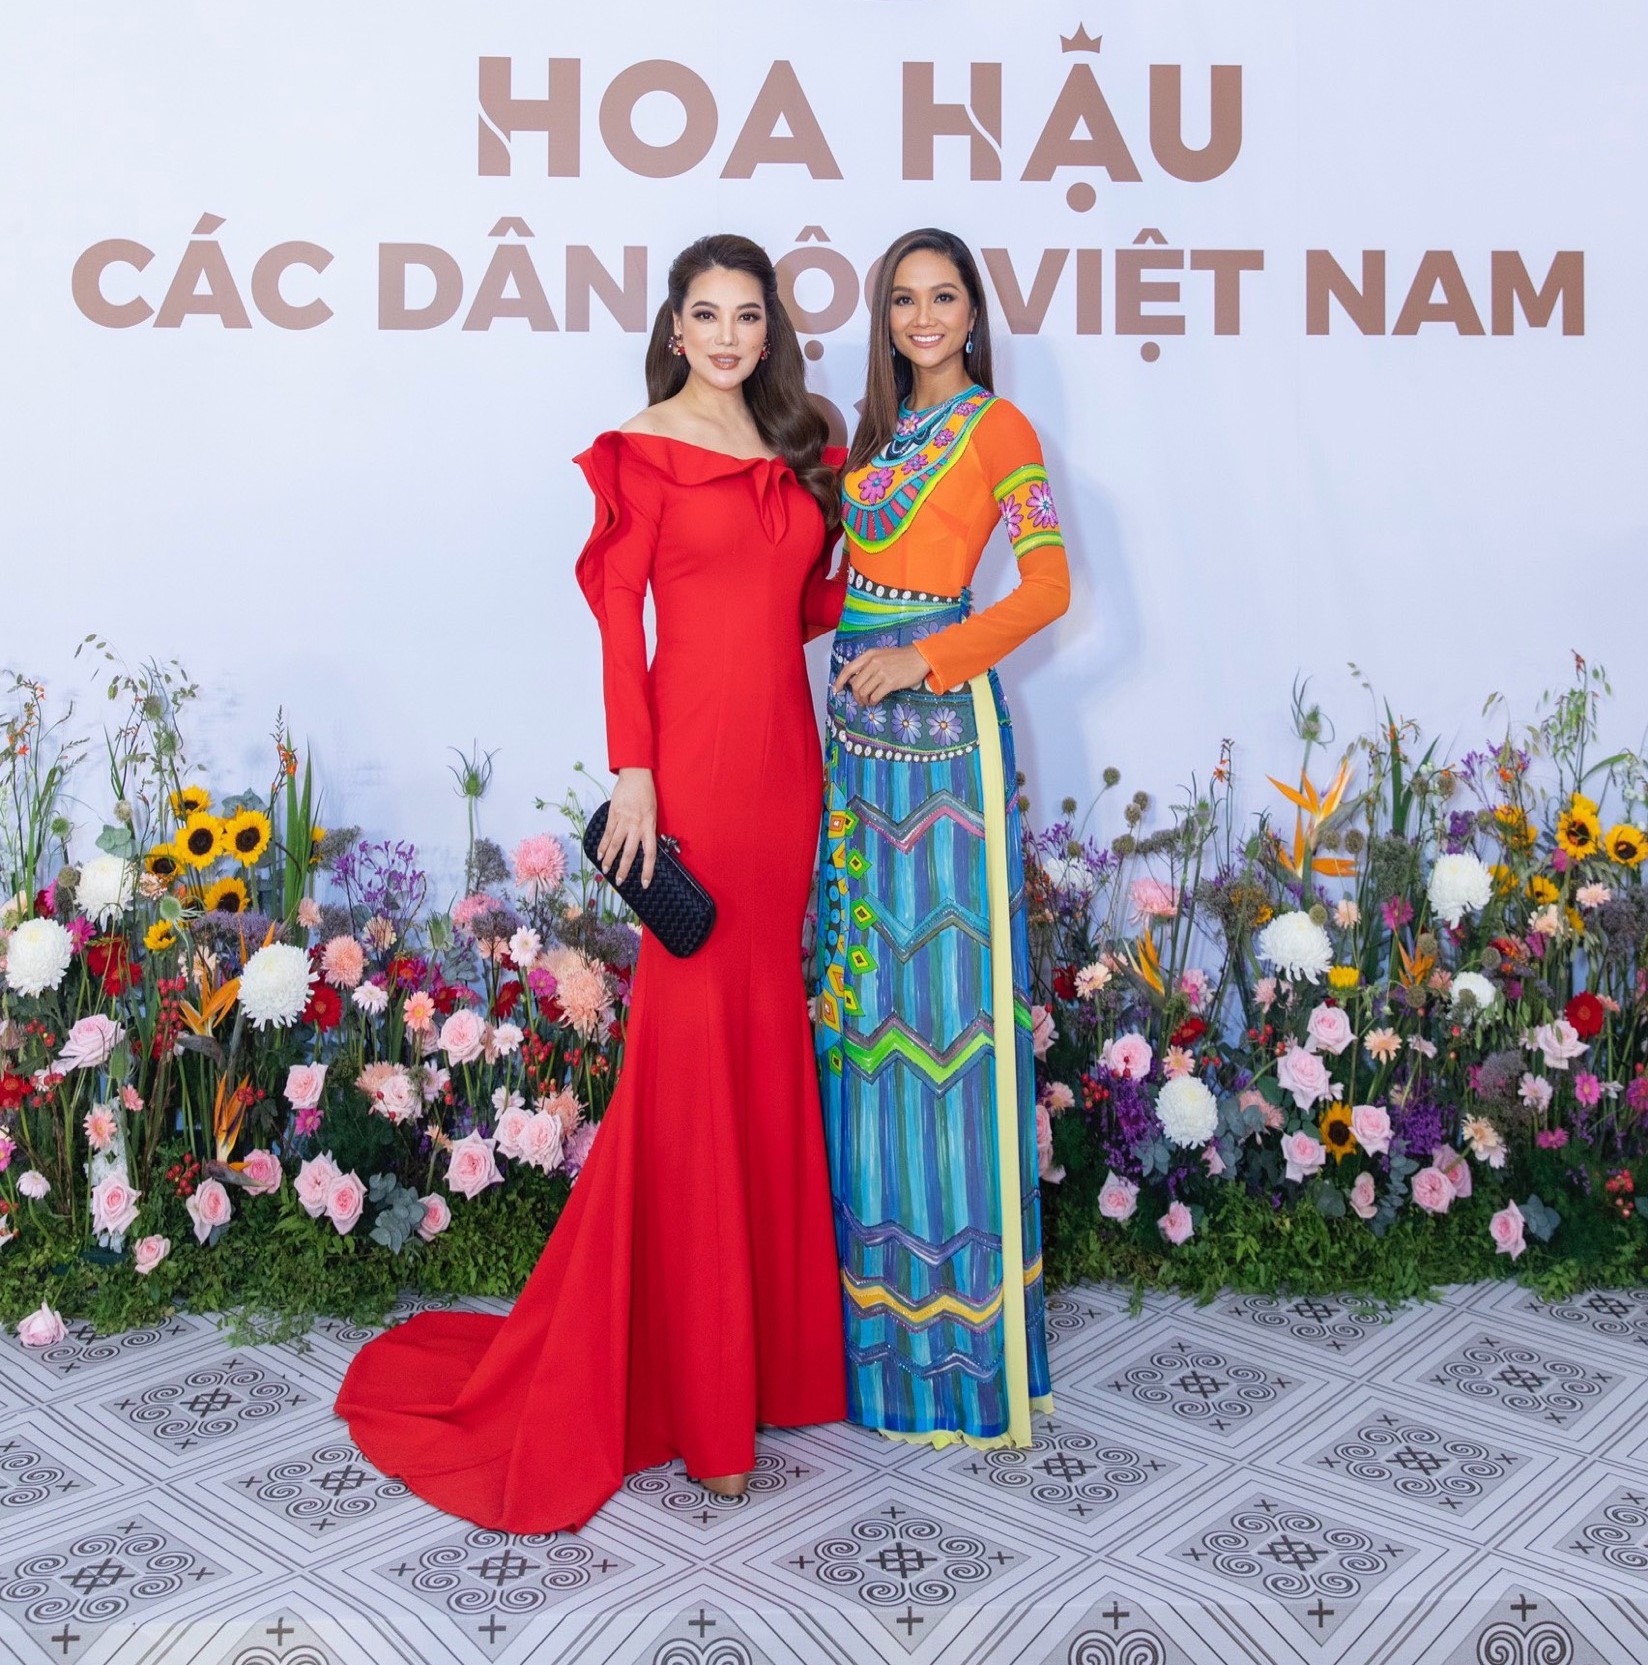 Đêm chung khảo Hoa hậu các Dân tộc Việt Nam 2022 vừa diễn ra, quy tụ khá nhiều người đẹp và những nghệ sĩ tên tuổi. Tuy nhiên nổi bật hơn cả là hoa hậu H’Hen Niê và Trương Ngọc Ánh.